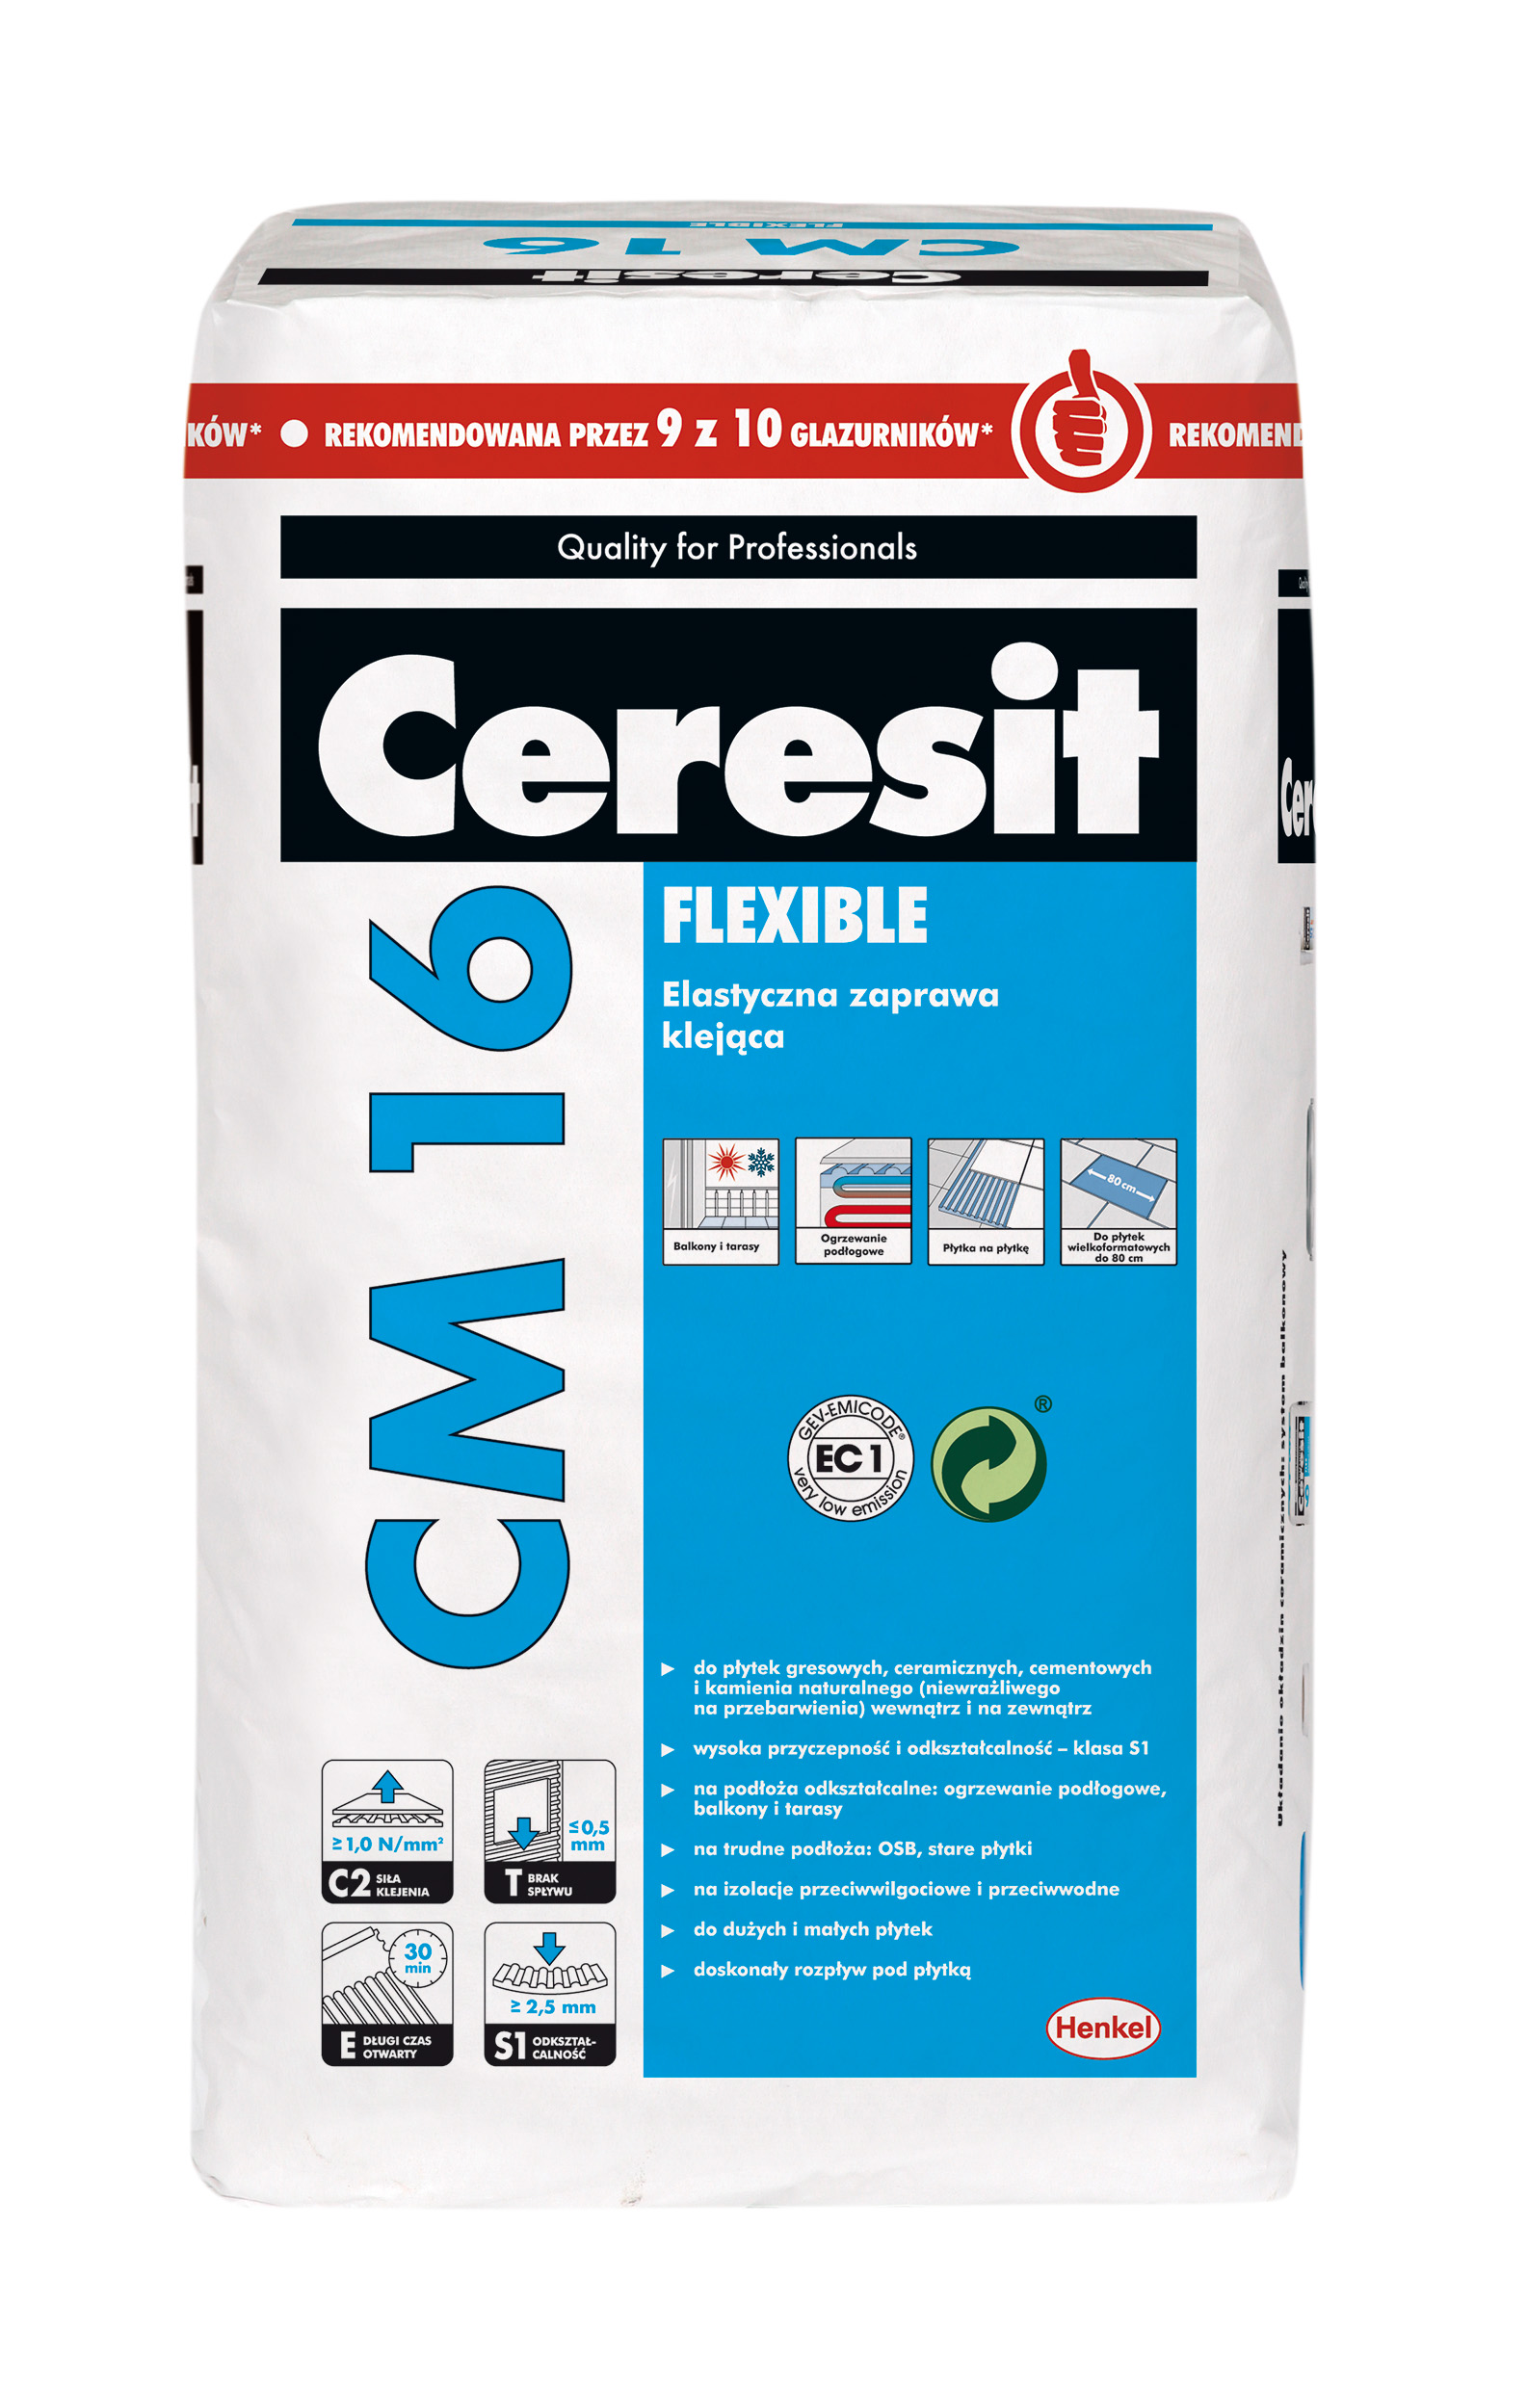 Купить клей ceresit. Церезит 16 клей для керамогранита. Клей плиточный Ceresit см 16. Клей для плитки (с2 т е) Ceresit cm16, 25 кг. Клей Церезит см 16.